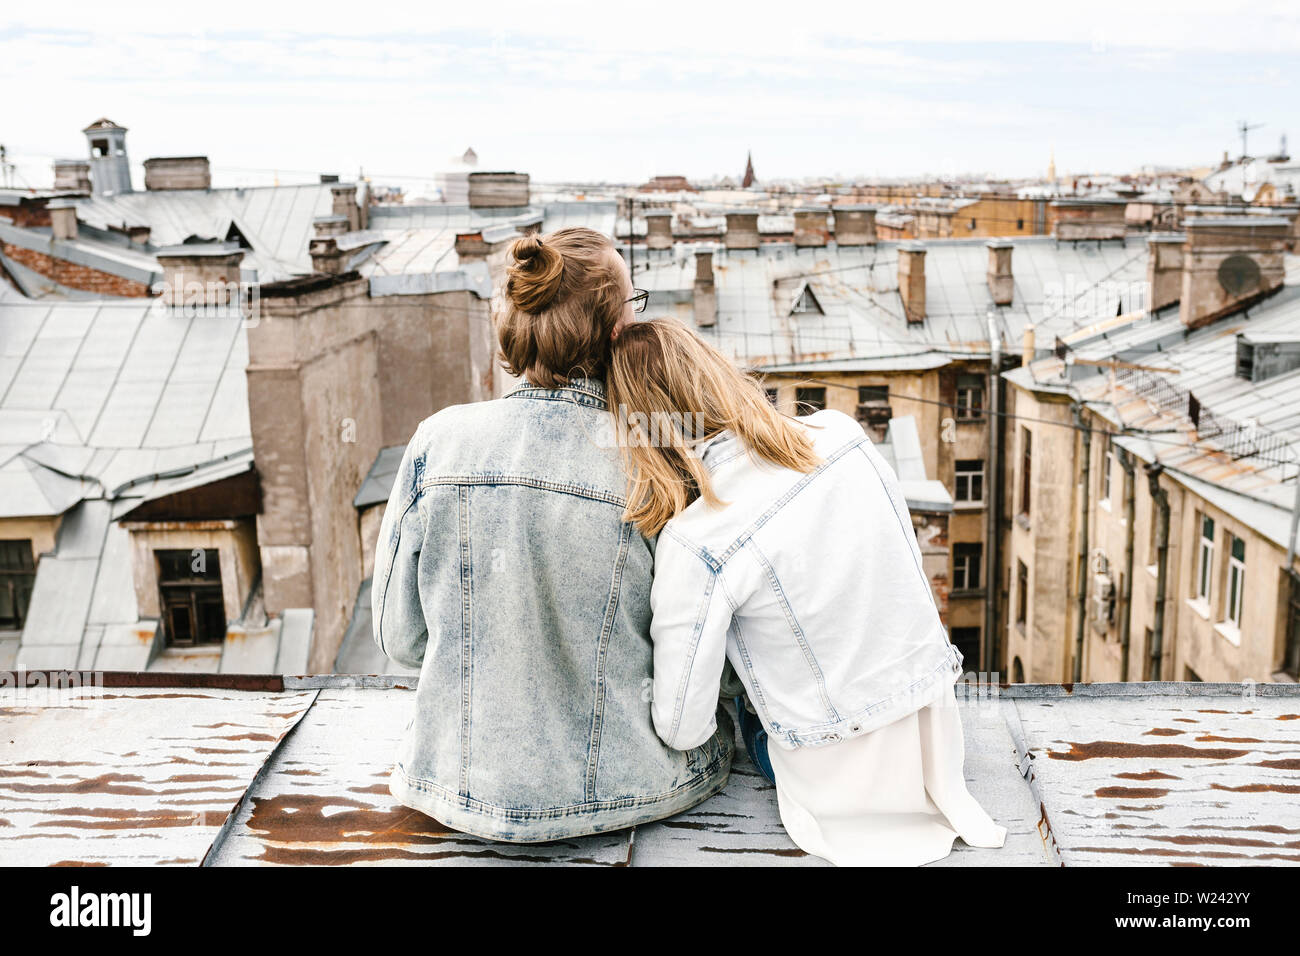 Ein junges Paar sitzt auf dem Dach bewundert und einer schönen Aussicht auf die Stadt. Romantik, Liebe und vertrauensvolle Beziehungen. Oder er Traum oder digital detox zusammen. Stockfoto